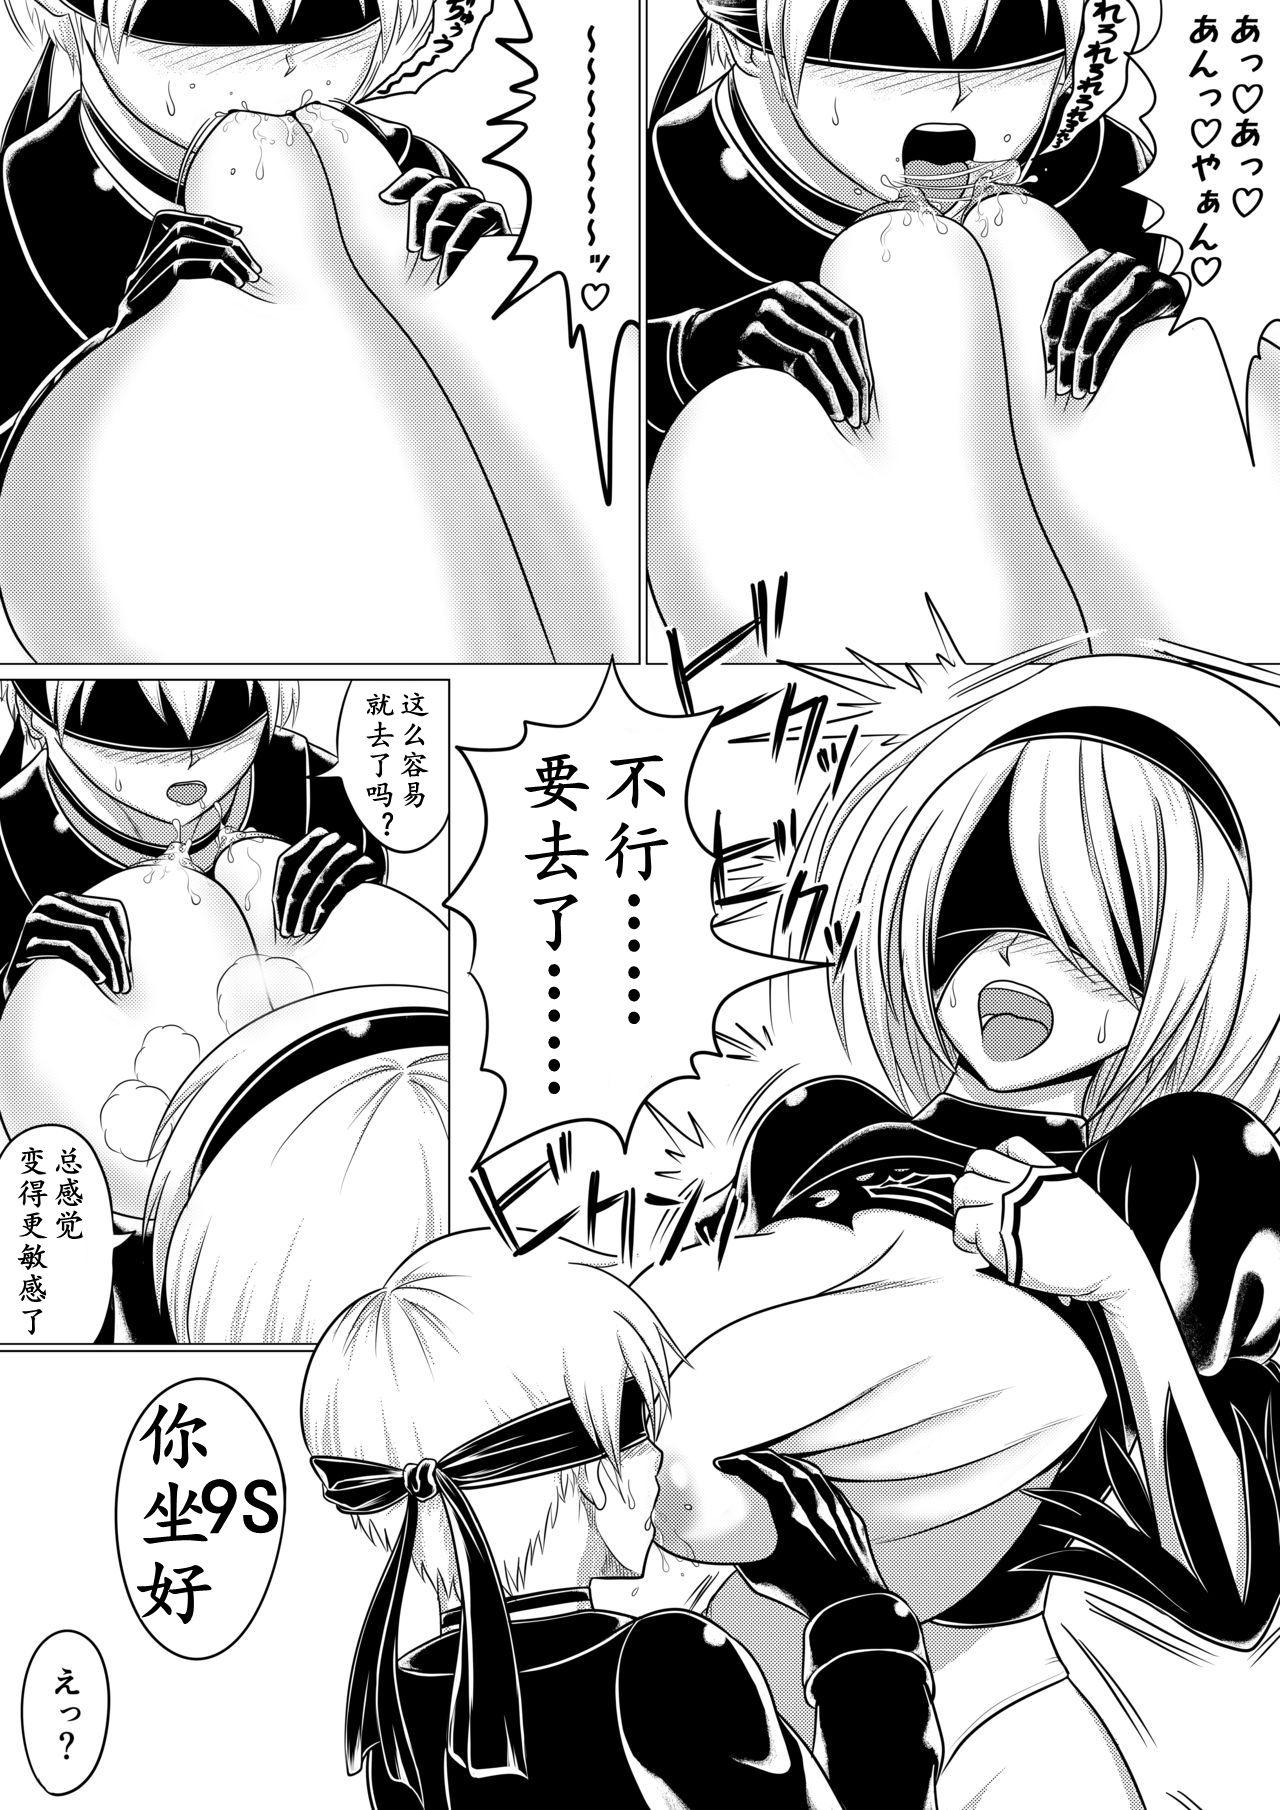 Masseur Automata Manga Oppai Hen - Nier automata Fake Tits - Page 4